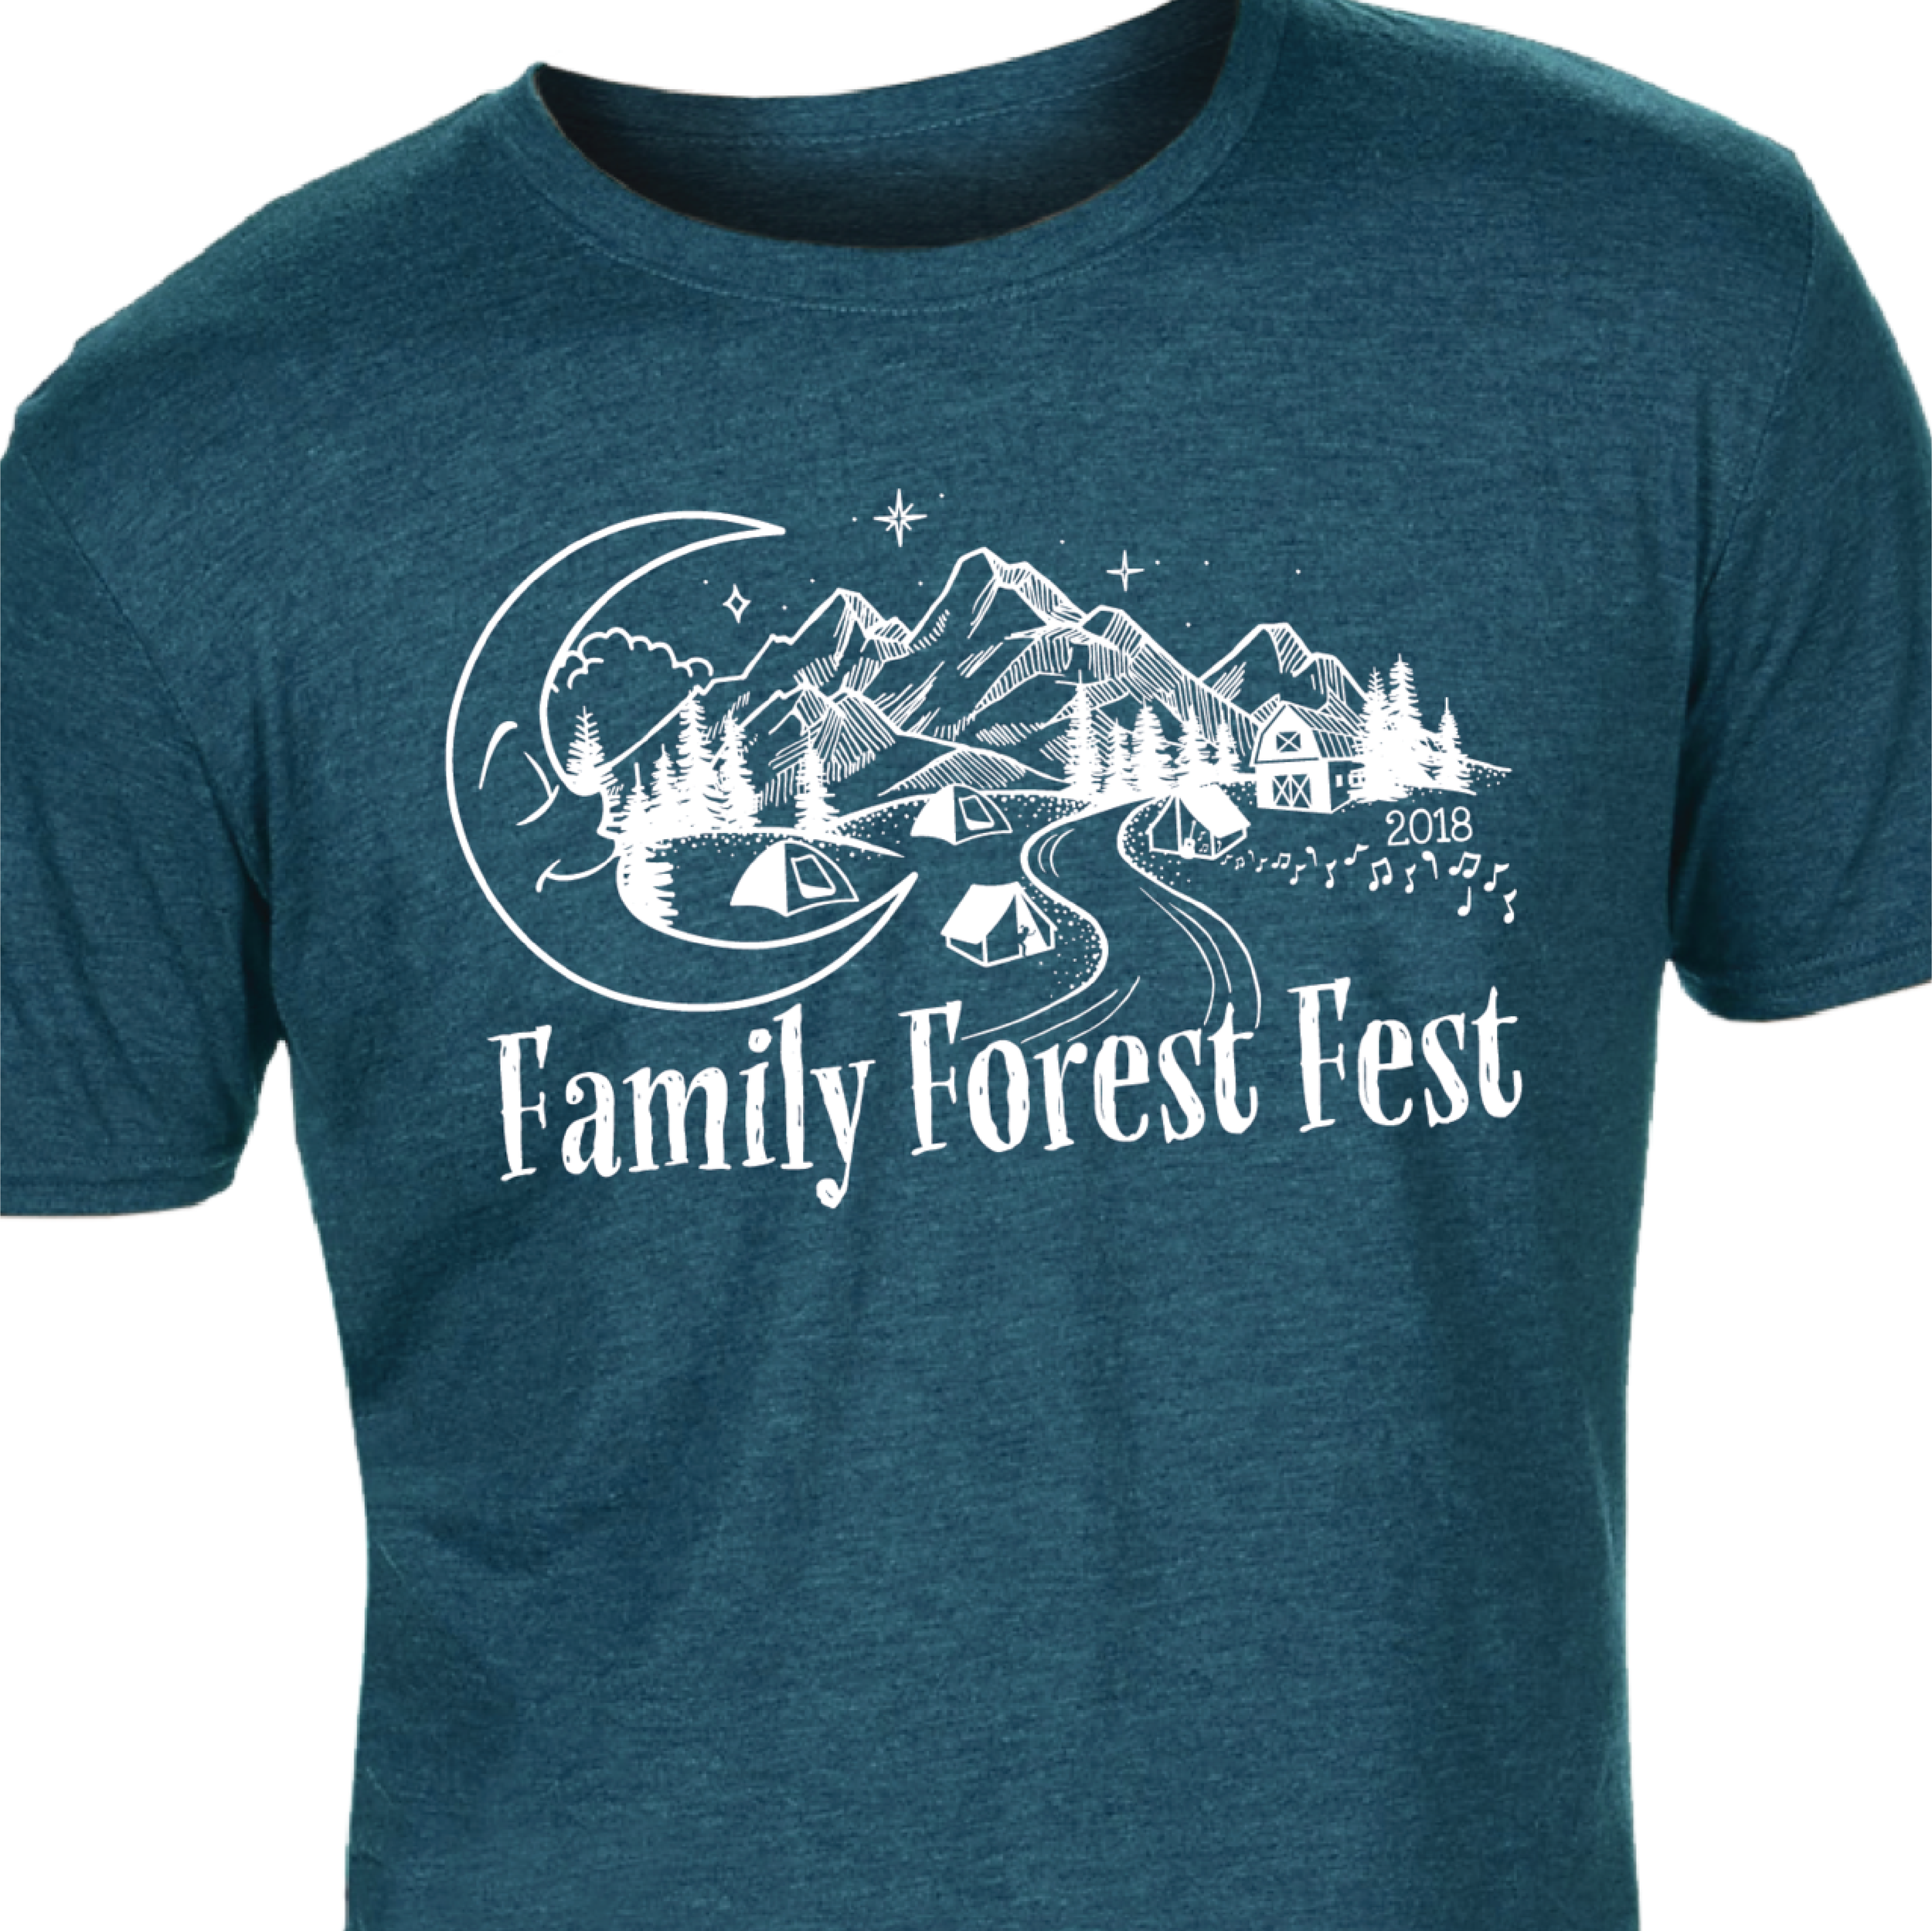 Family Forest Fest 